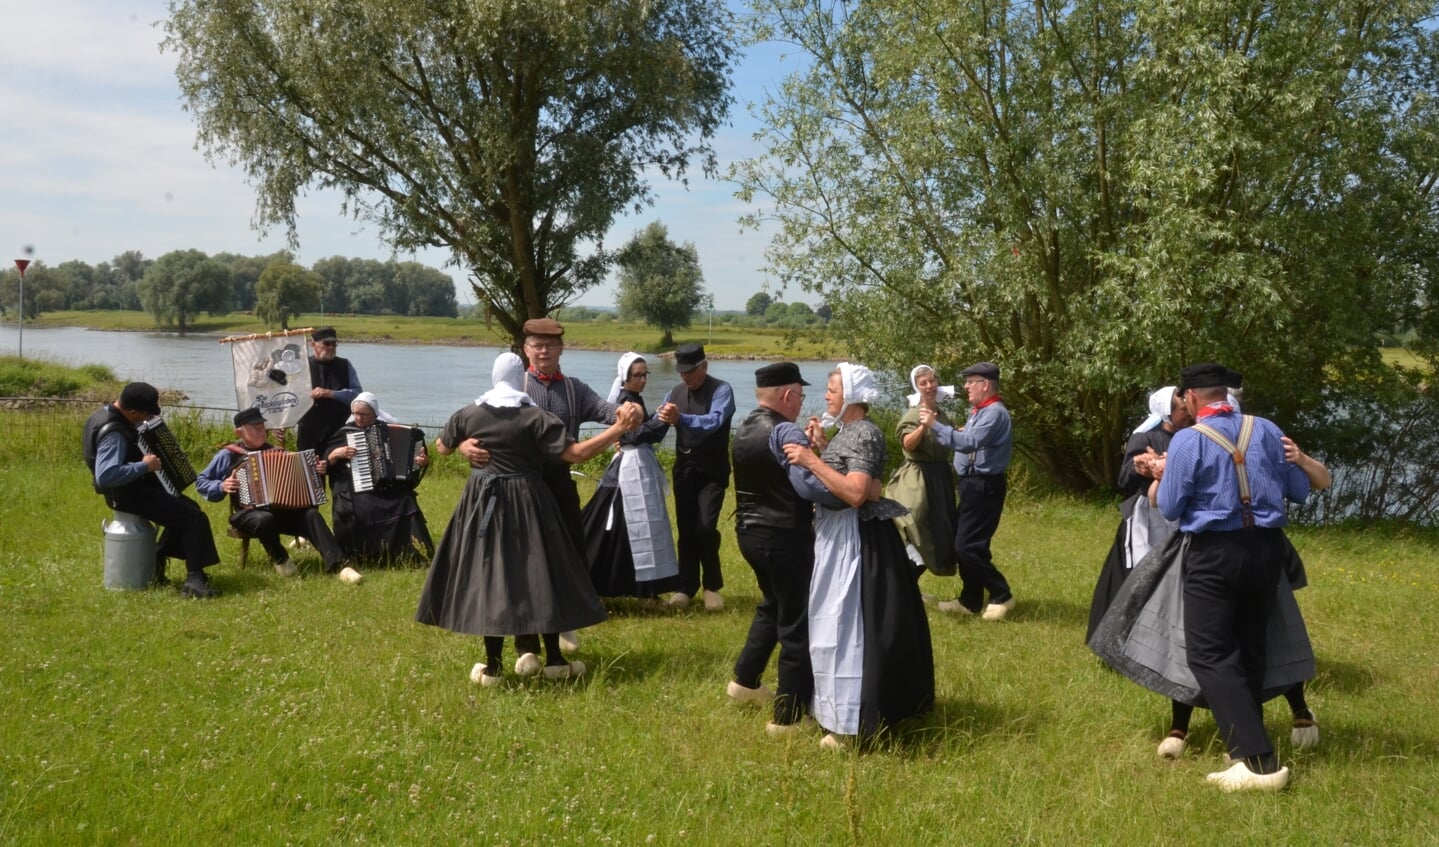 Folkloristische dansgroep De Iesselschotsers uit Steenderen. Foto: Johan Braakman